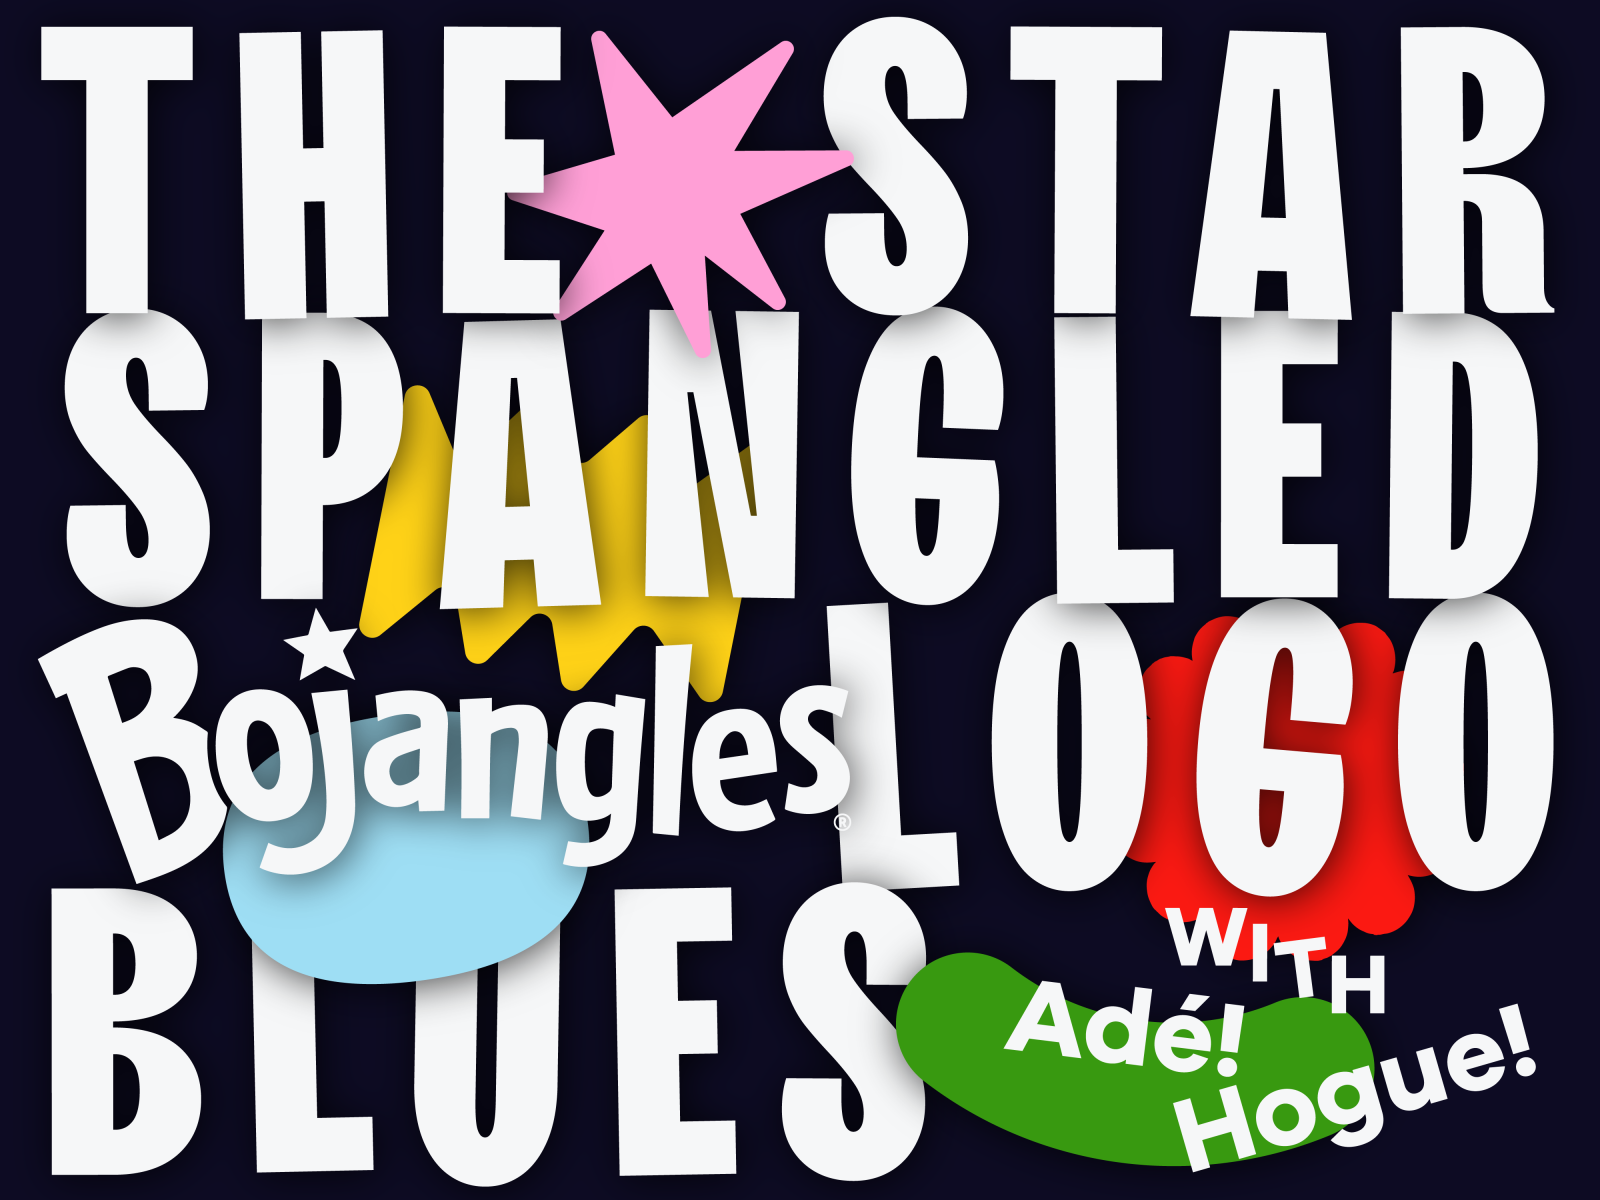 Overtime: The Star-Spangled Bojangles (Logo) Blues